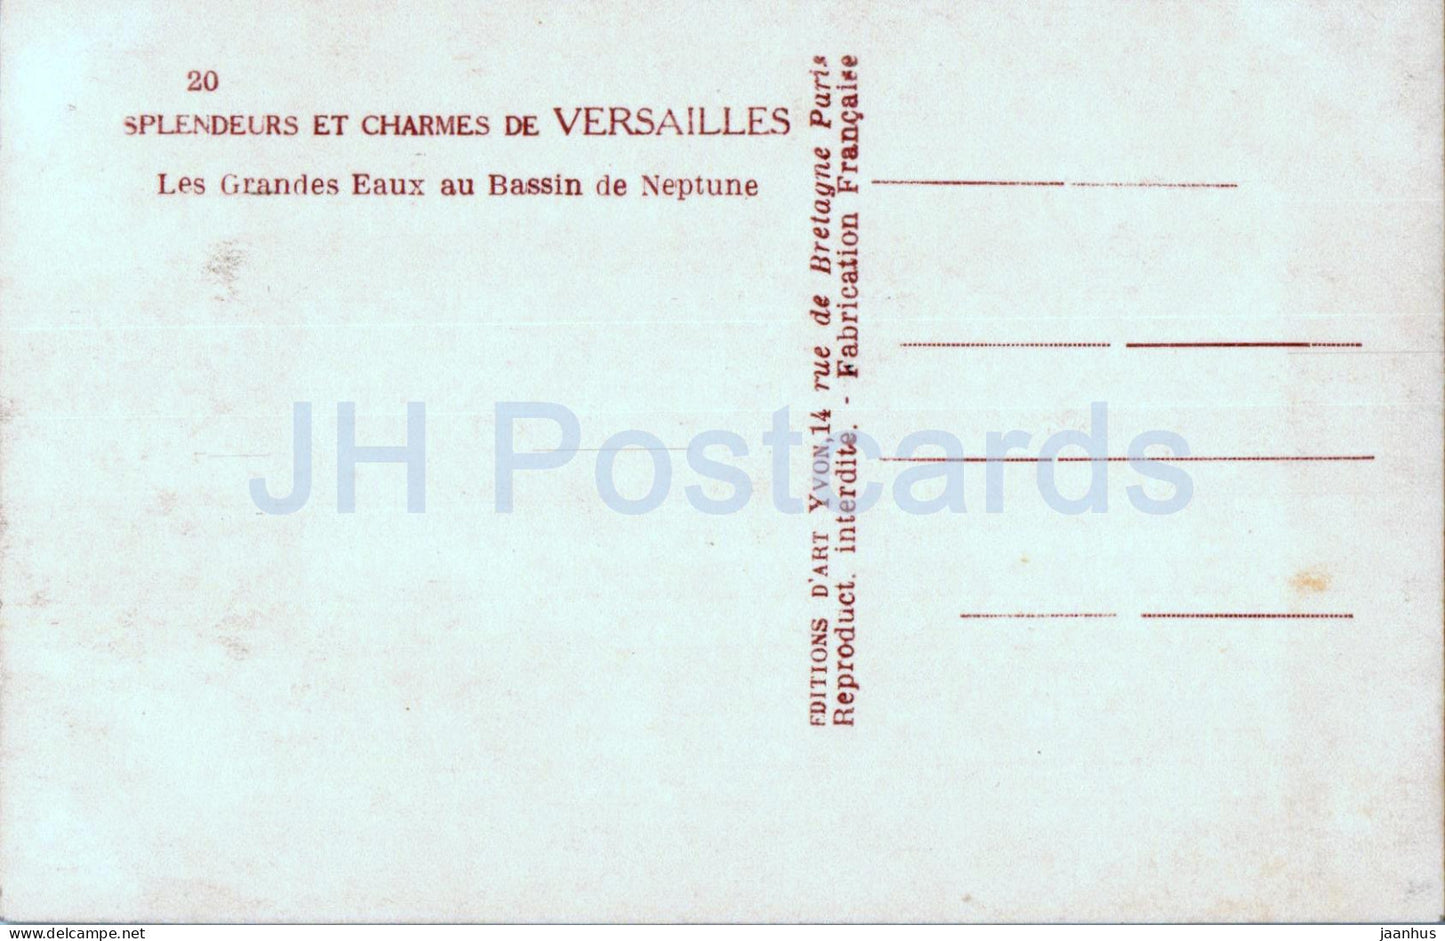 Splendeurs et Charmes de Versailles - Les Grandes Eaux au Bassin de Neptune - 20 - alte Postkarte - Frankreich - unbenutzt 